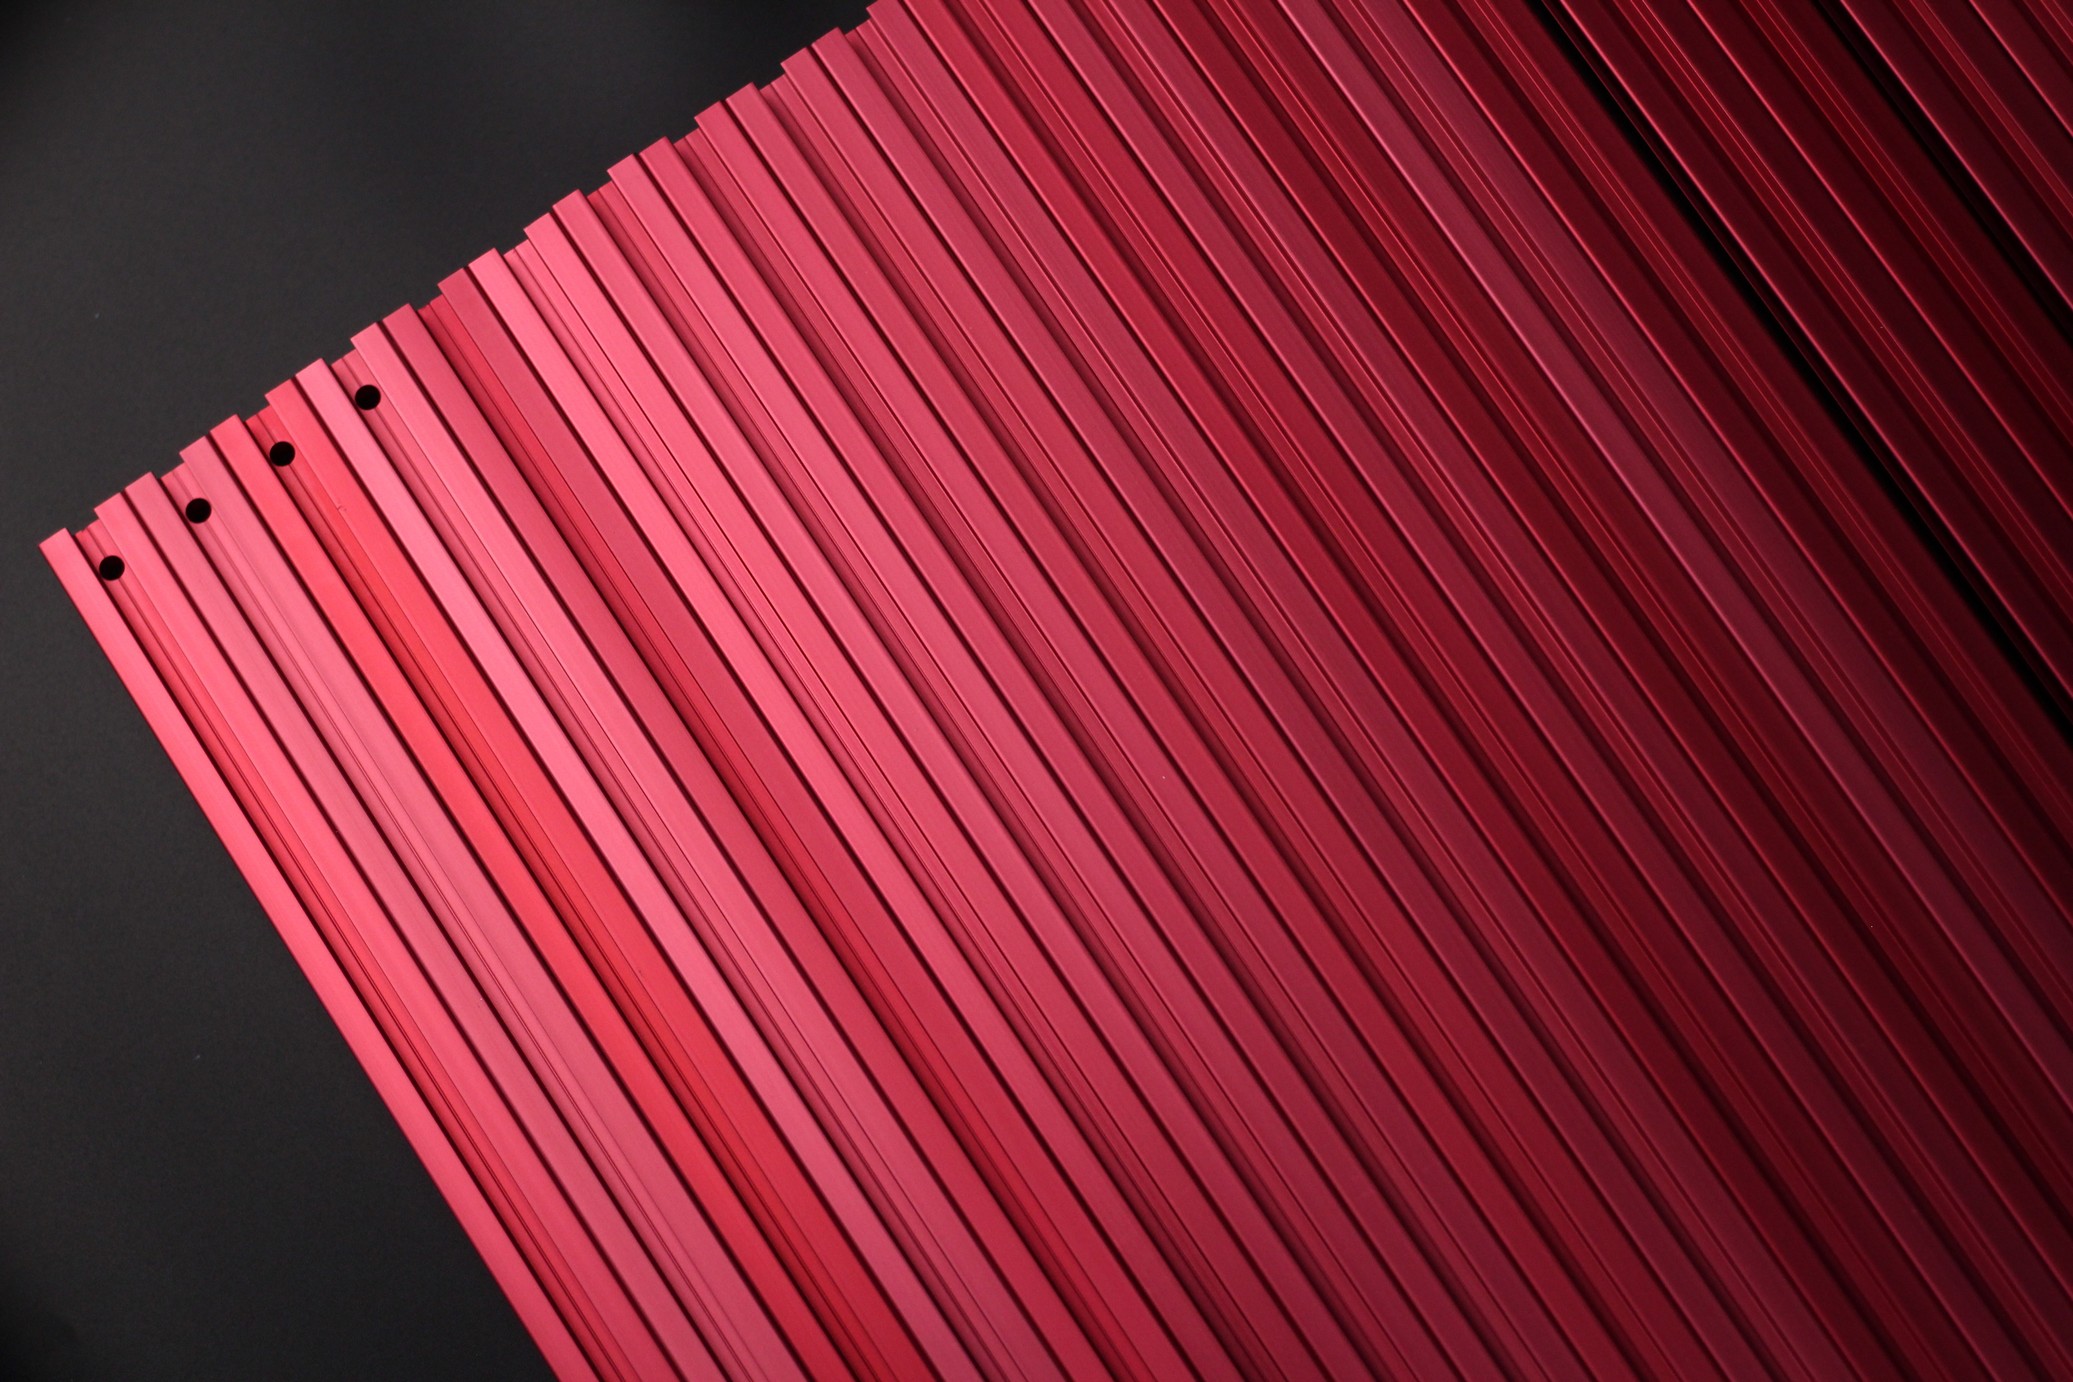 FYSETC Voron Trident Kit Red Anodized Aluminum Profiles 3 | VORON Trident FYSETC Kit Review: Is it worth it?